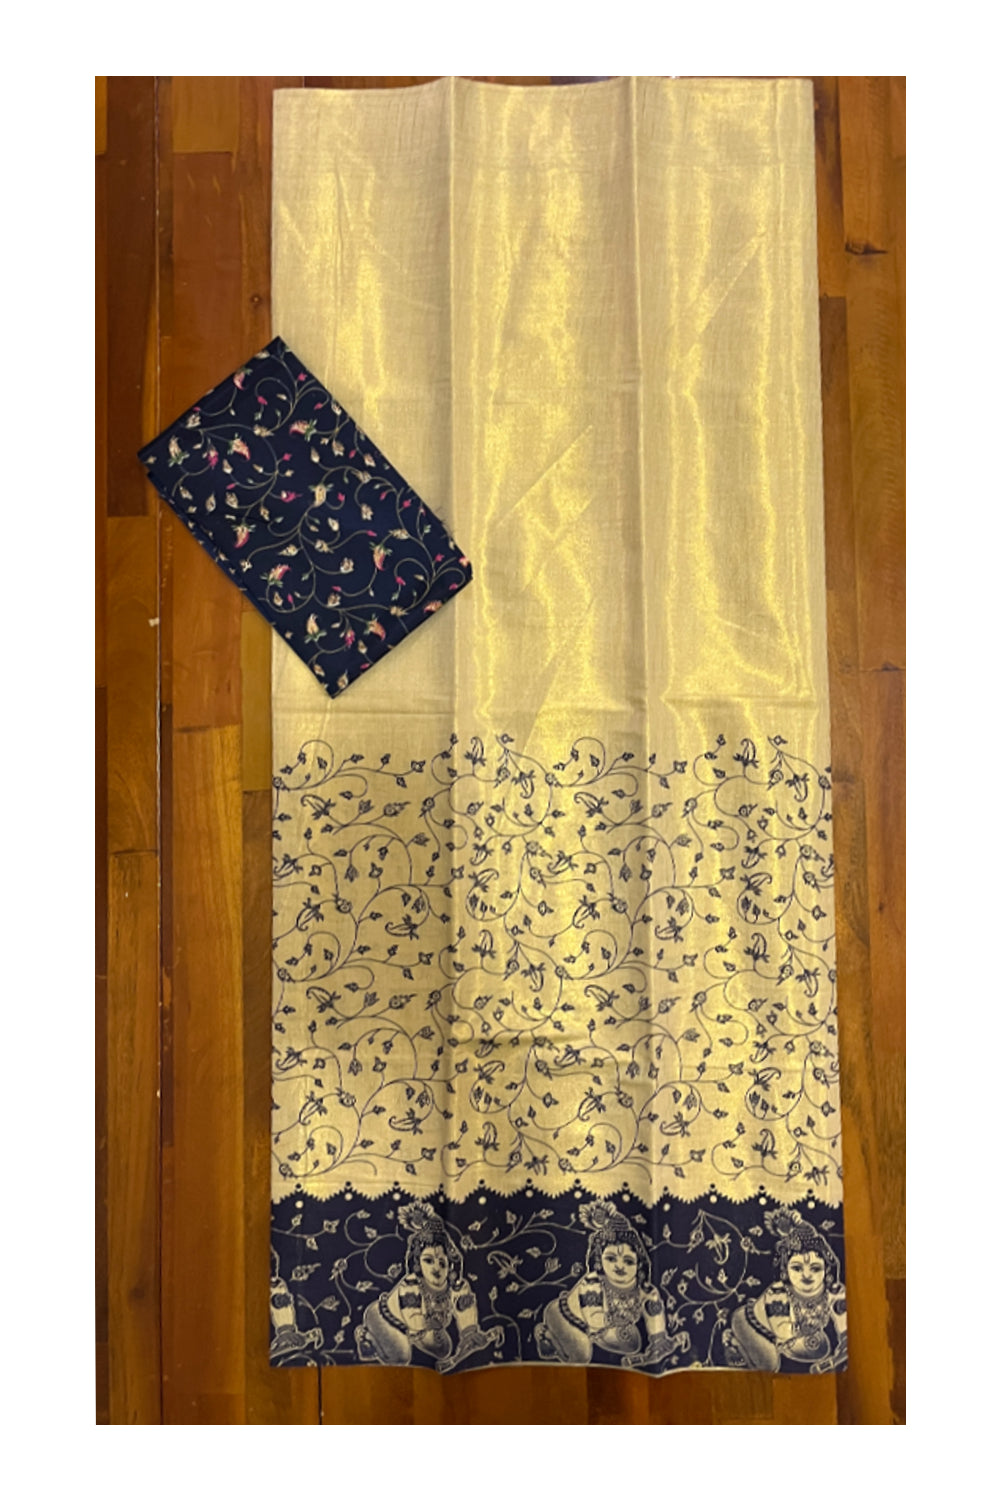 Kerala Tissue Block Printed Pavada and Dark Blue Designer Blouse Material for Kids/Girls 4.3 Meters